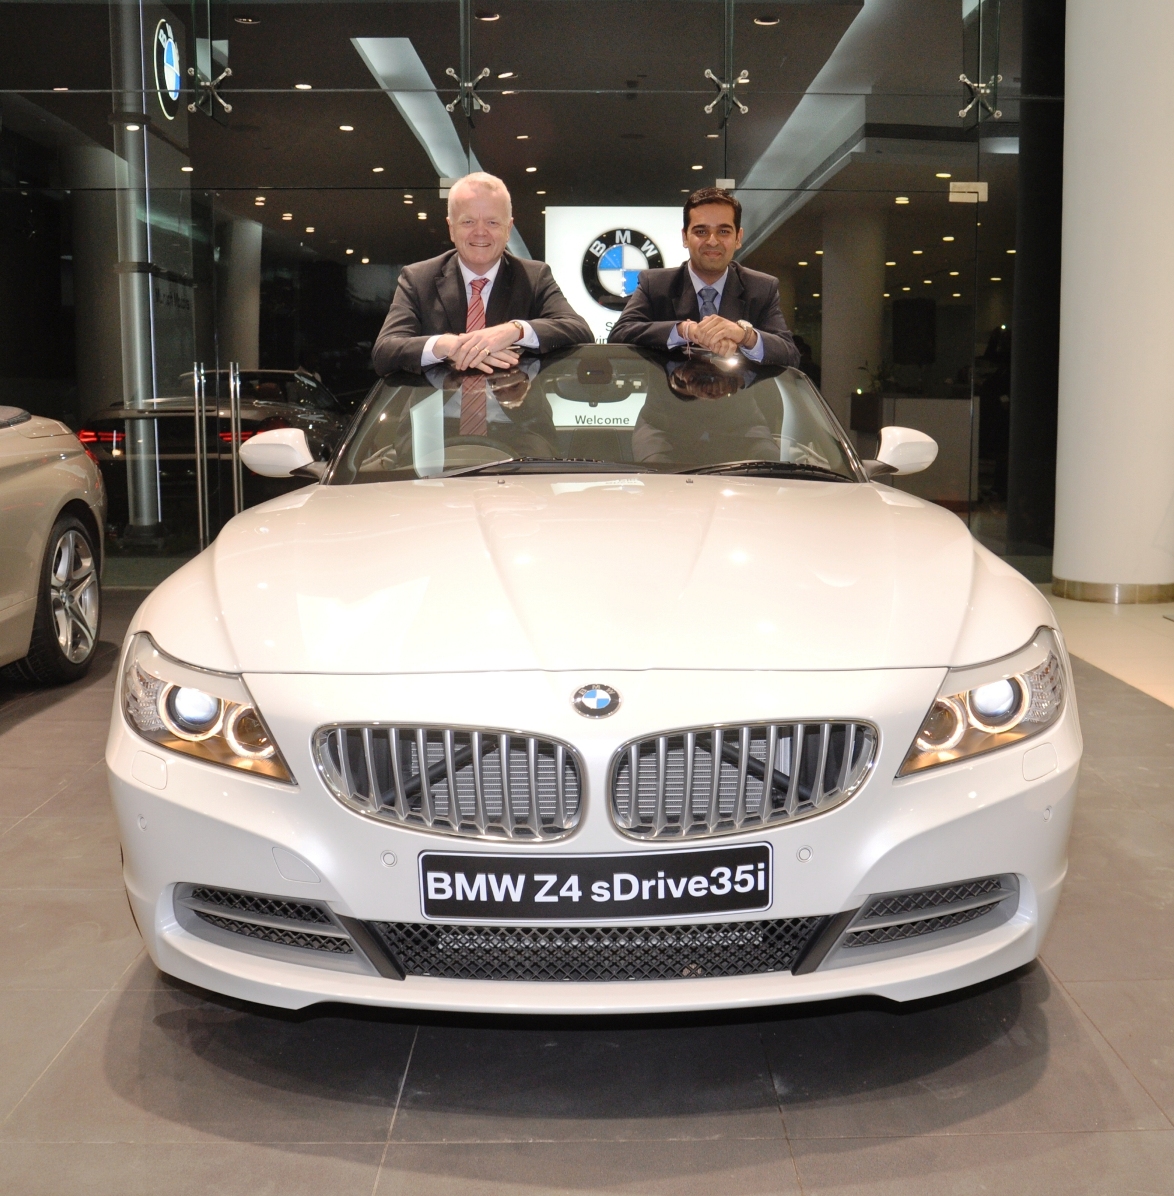 Mr. Philipp von Sahr President BMW Group India with Mr. Prashant Mandhan...